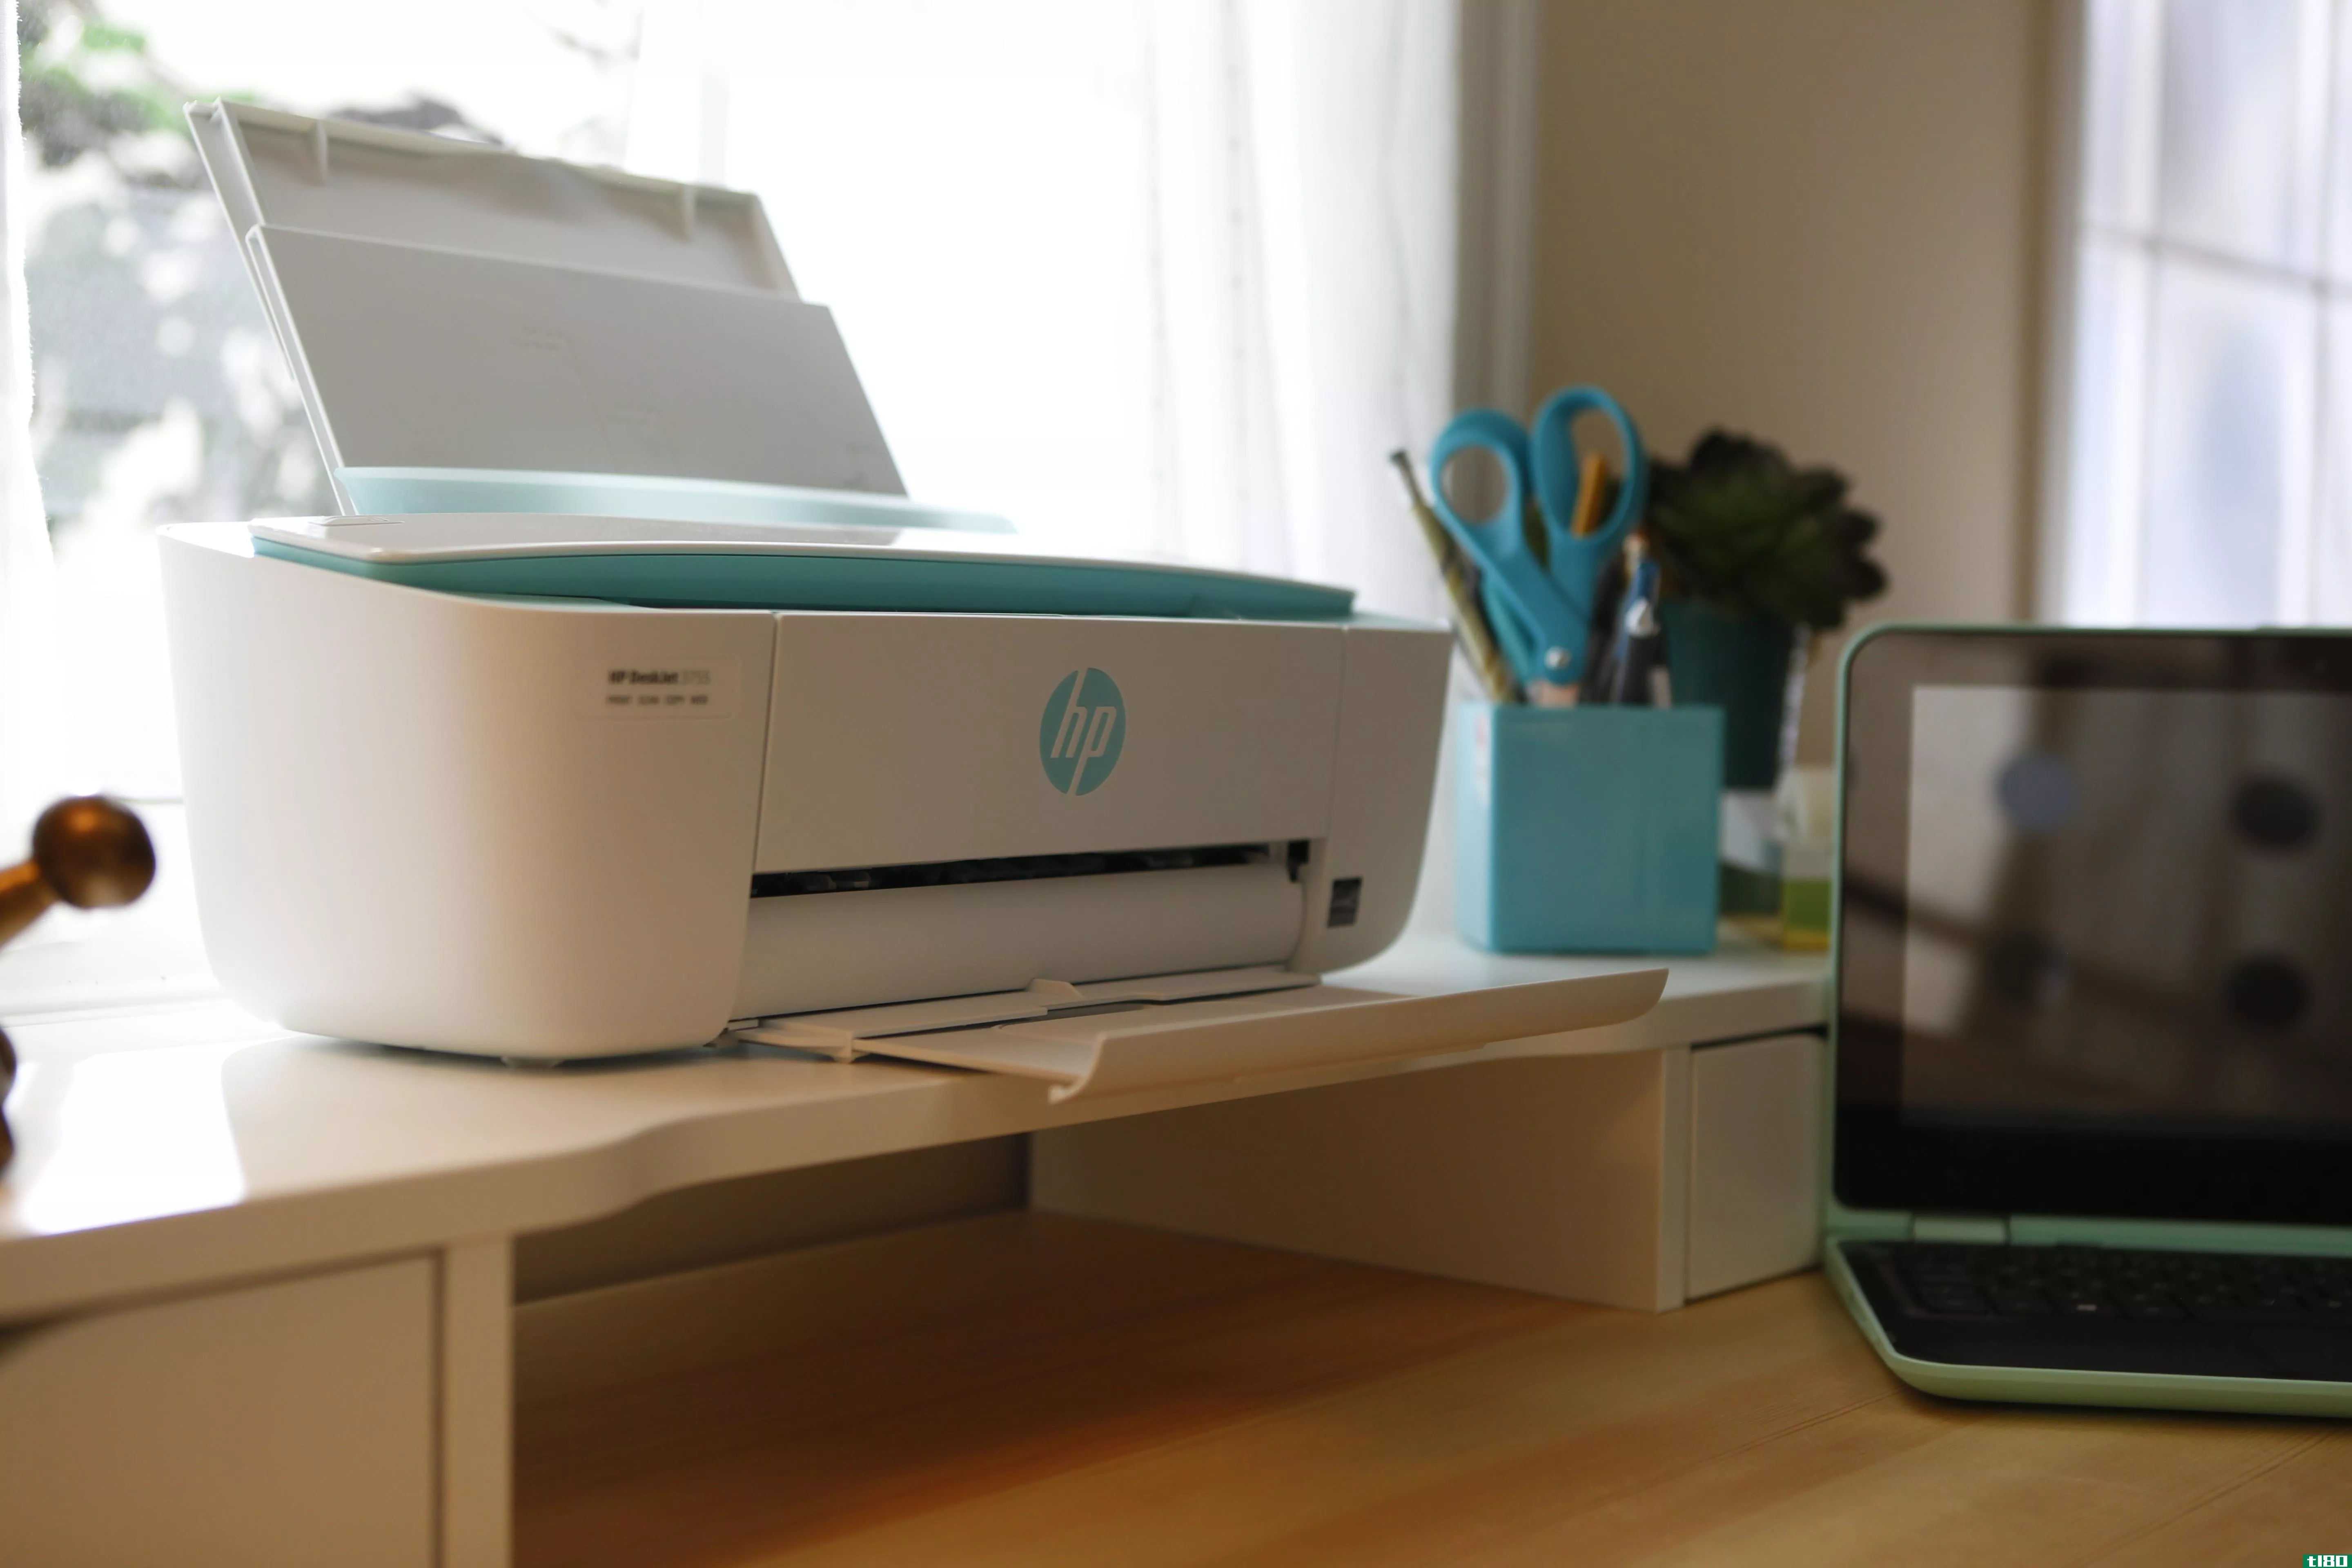 惠普宣布推出“世界上最小的一体机打印机”，但它已经生产了一台更小的打印机